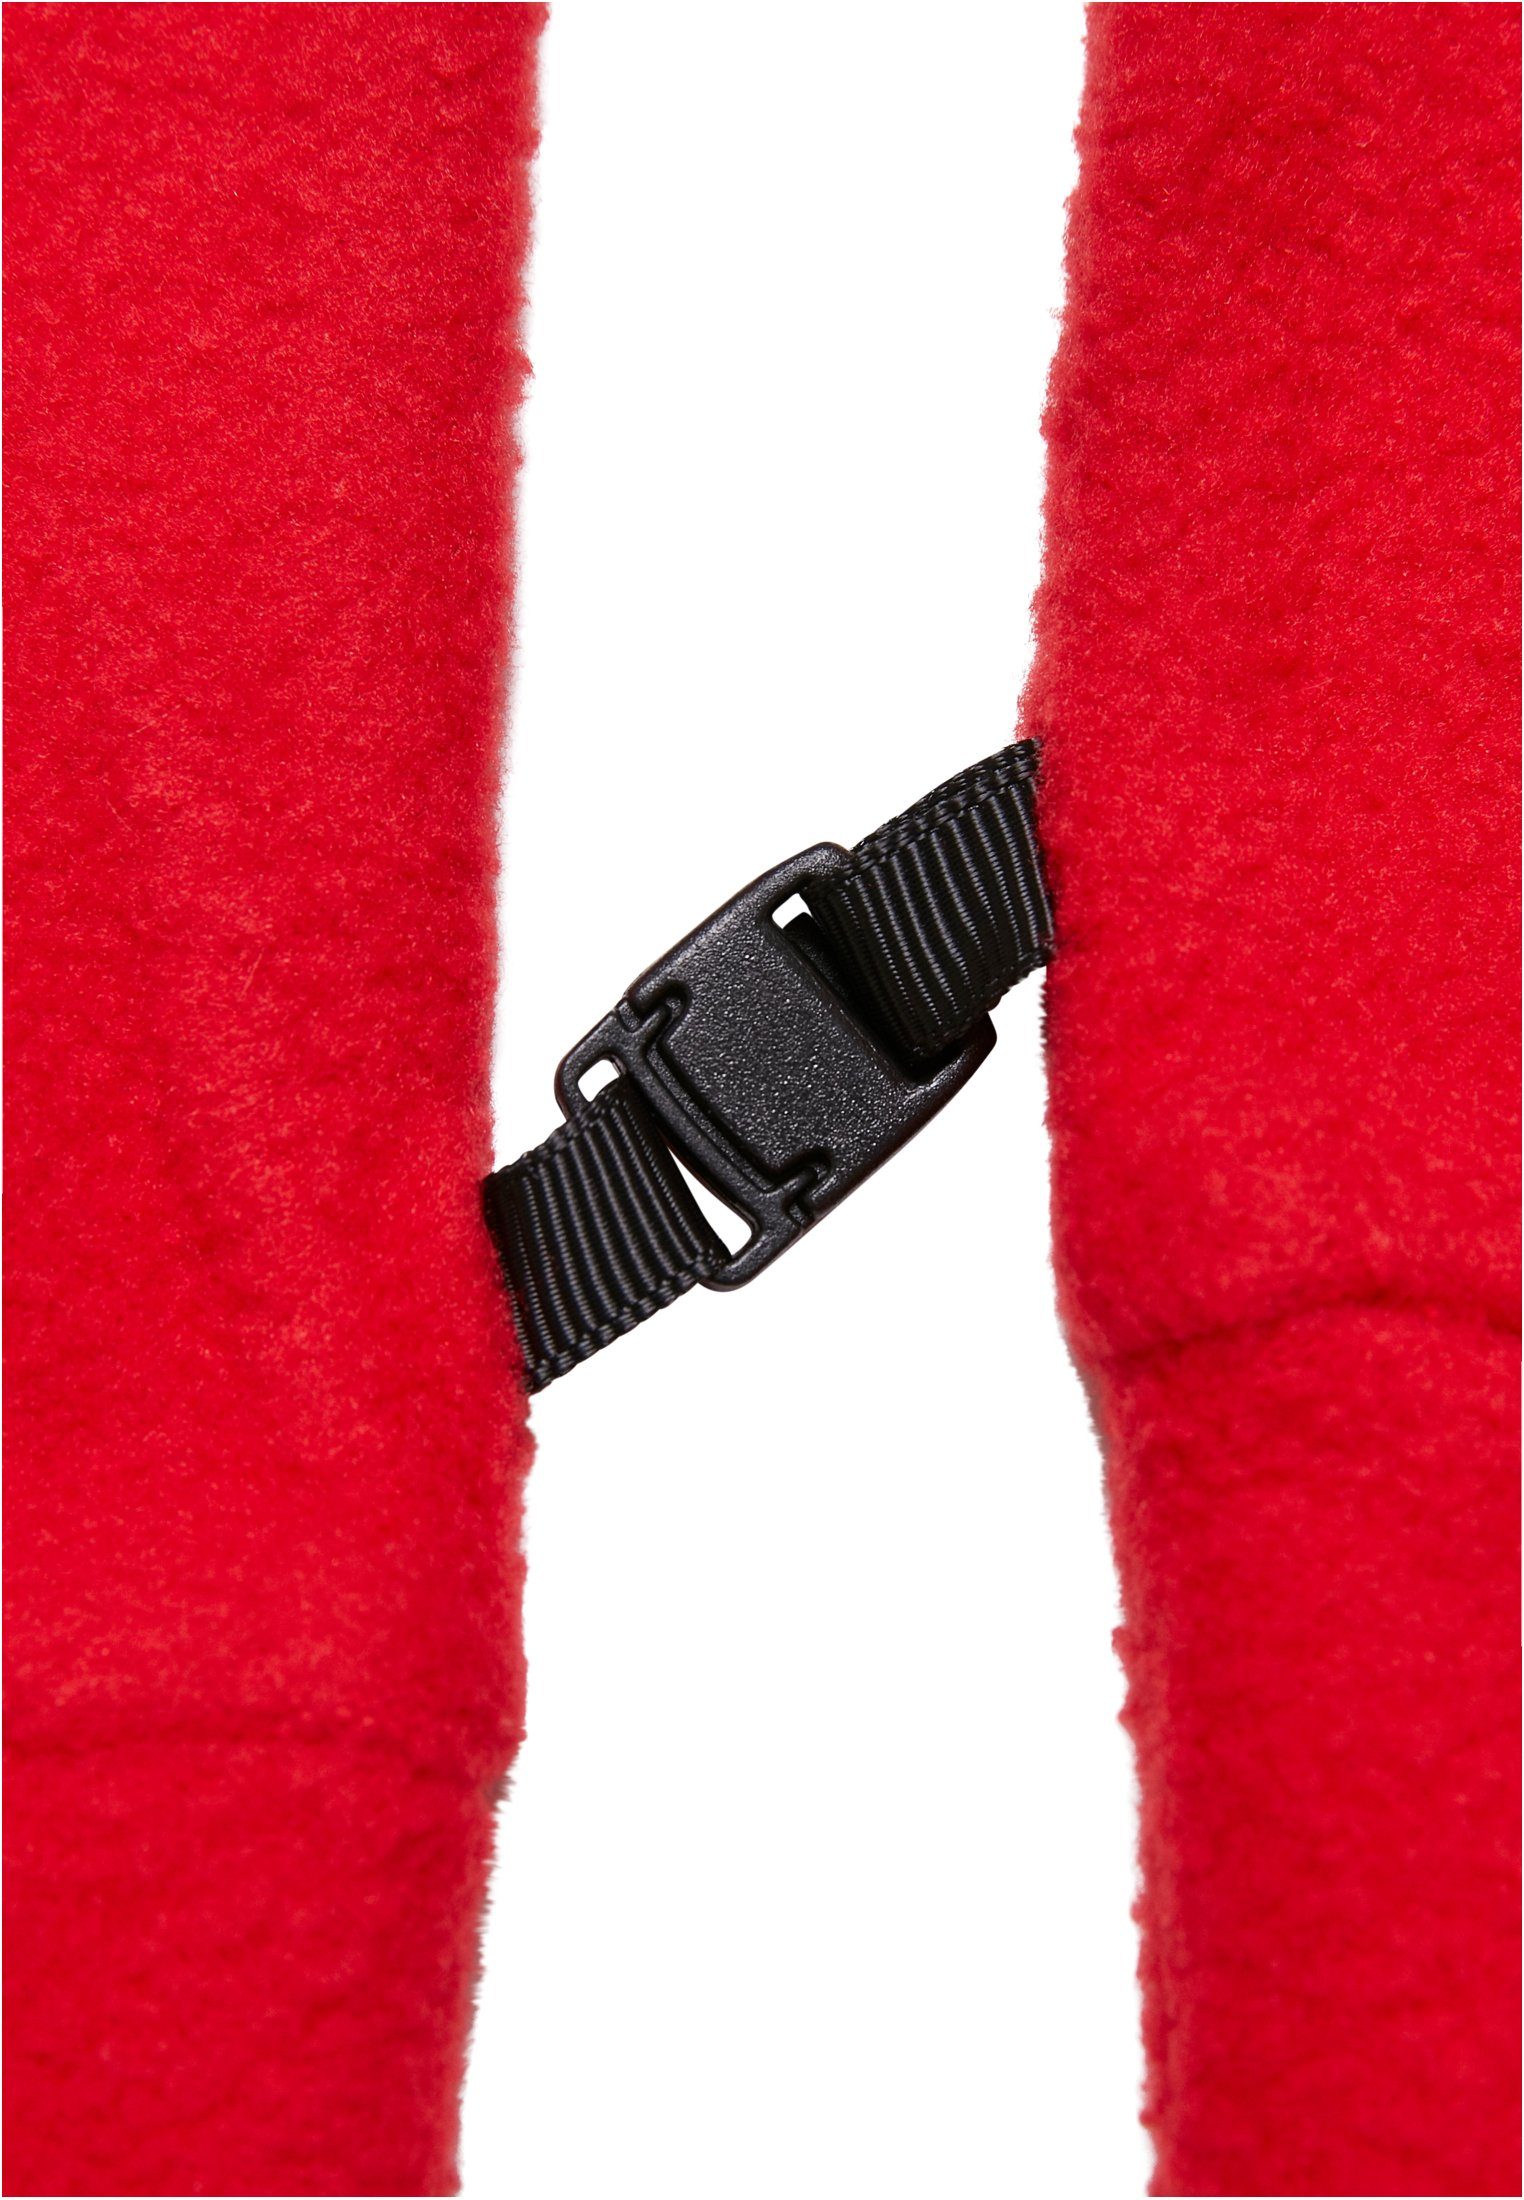 Baumwollhandschuhe NASA Set red MisterTee Fleece Accessoires